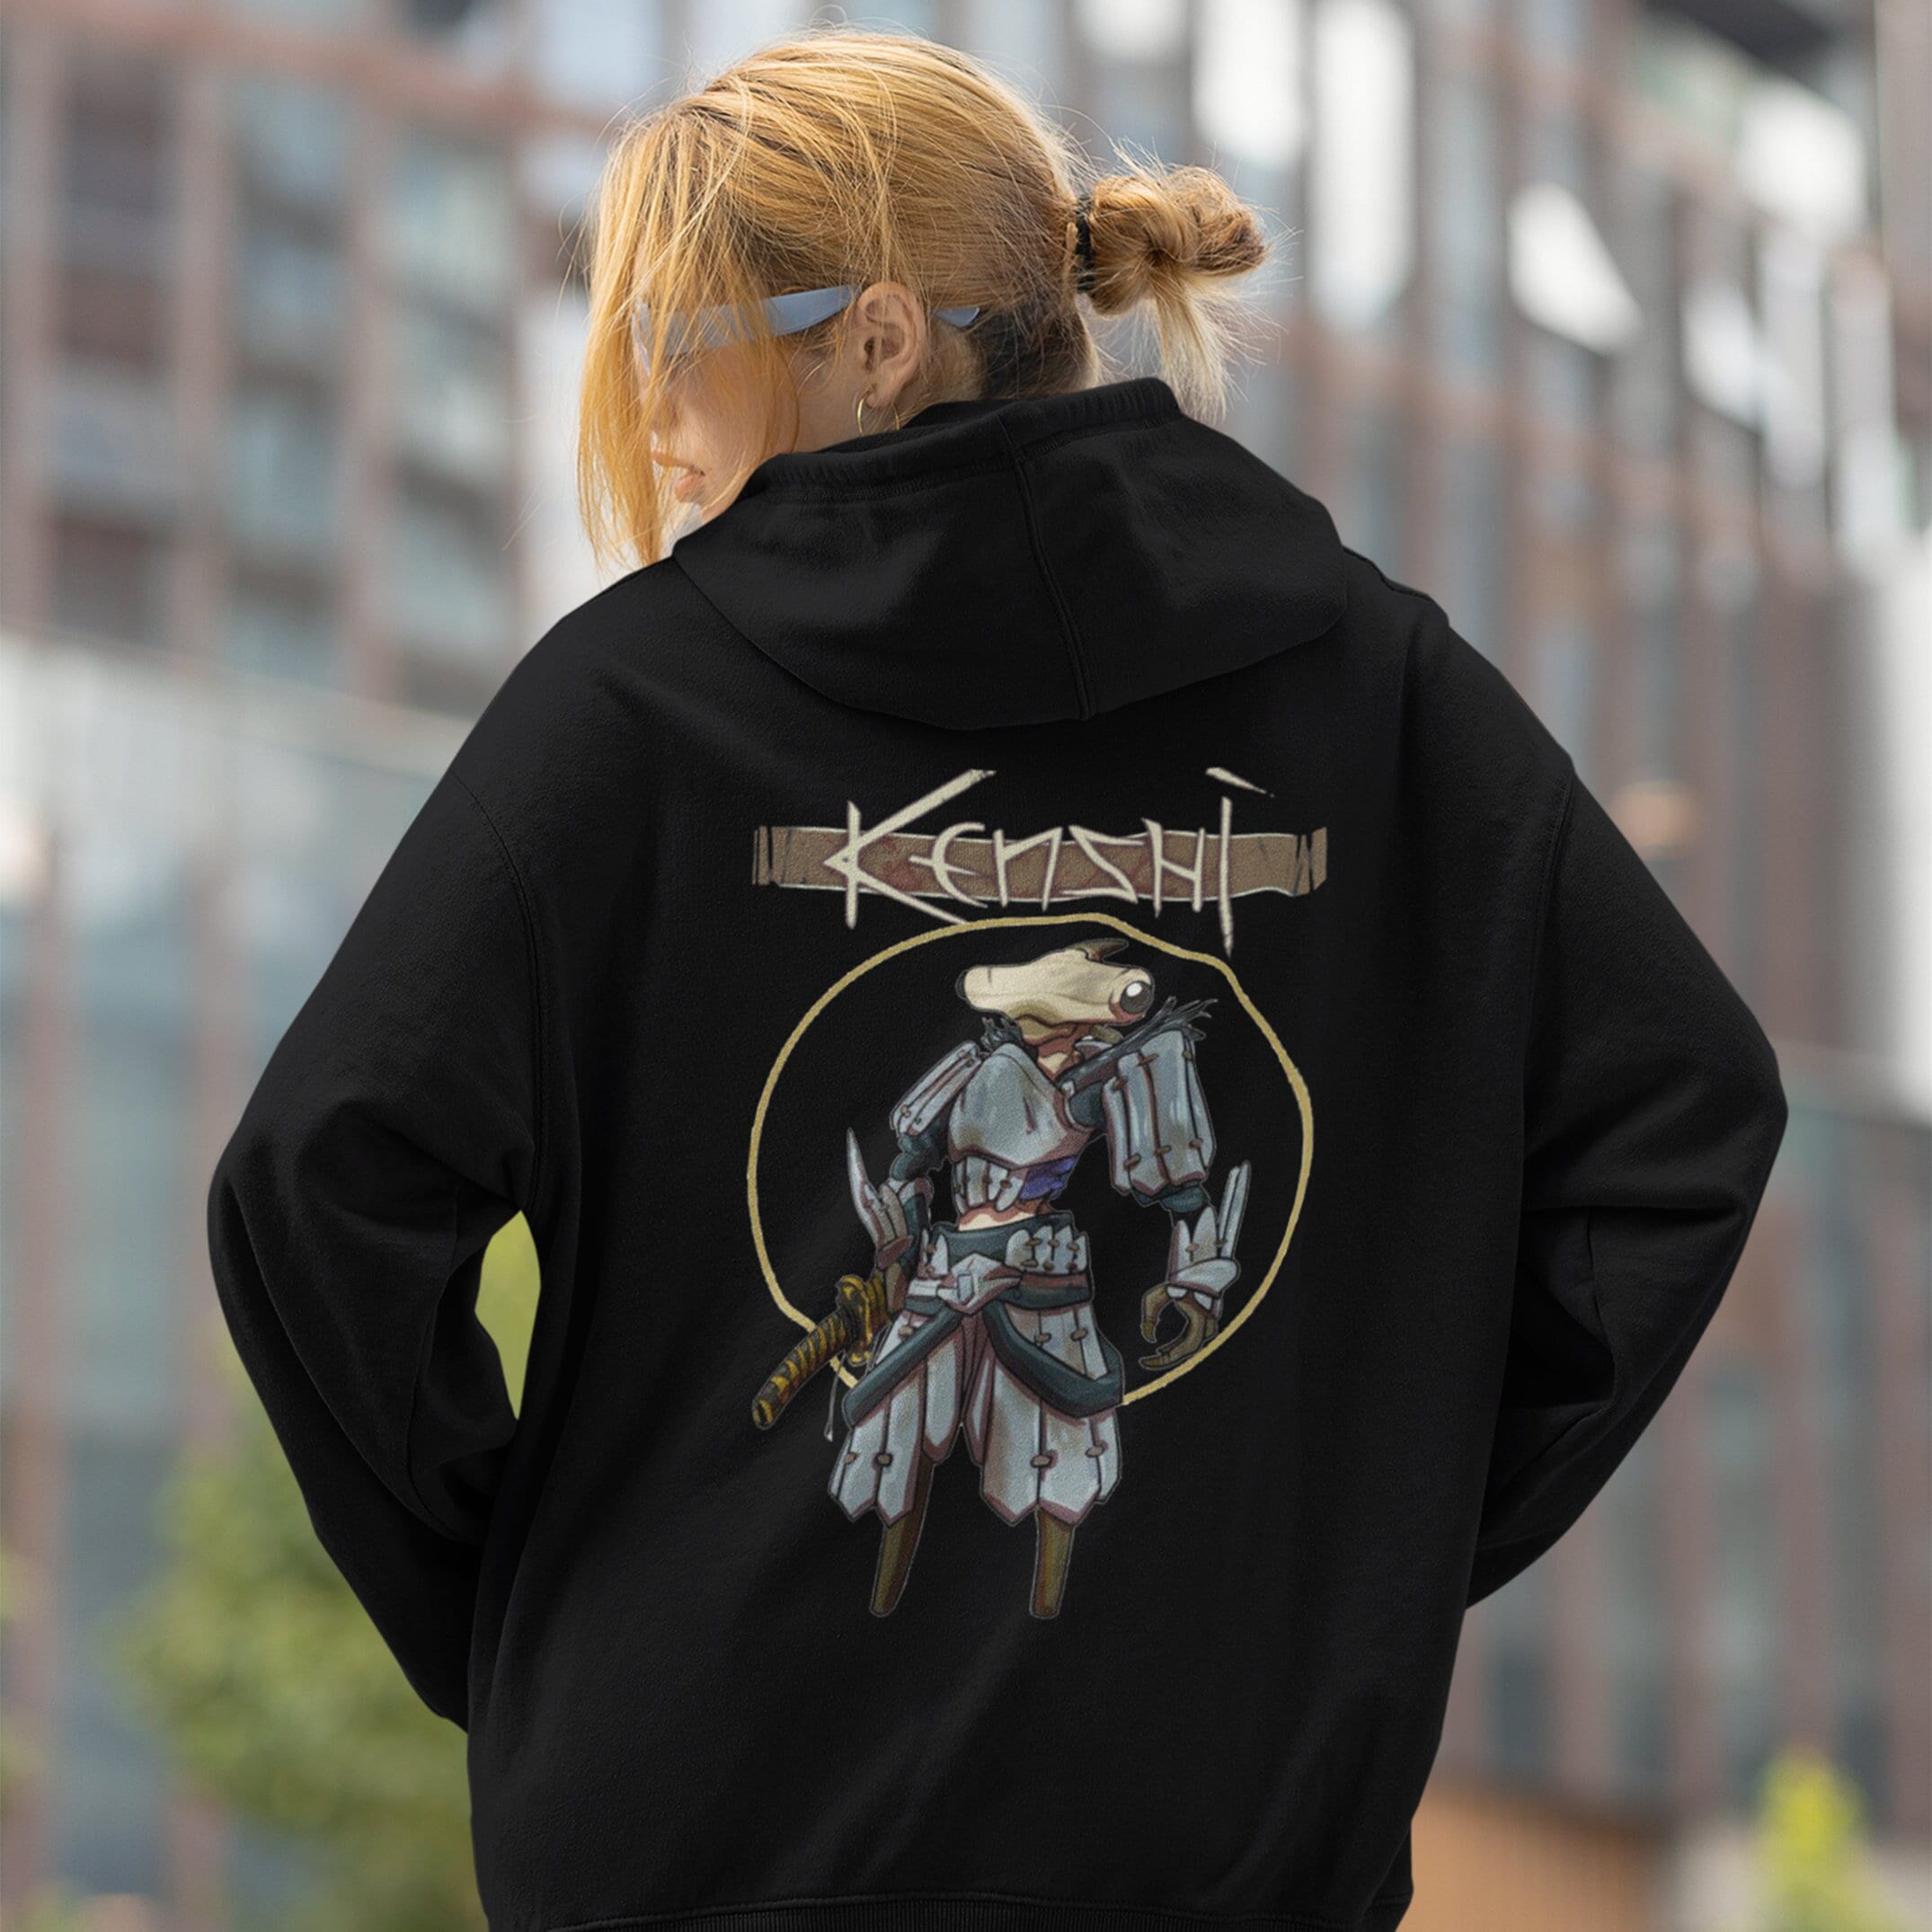 Custom Kenshi Graphic Hoodie / Kenshi Sweatshirt / Fan Art Kenshi